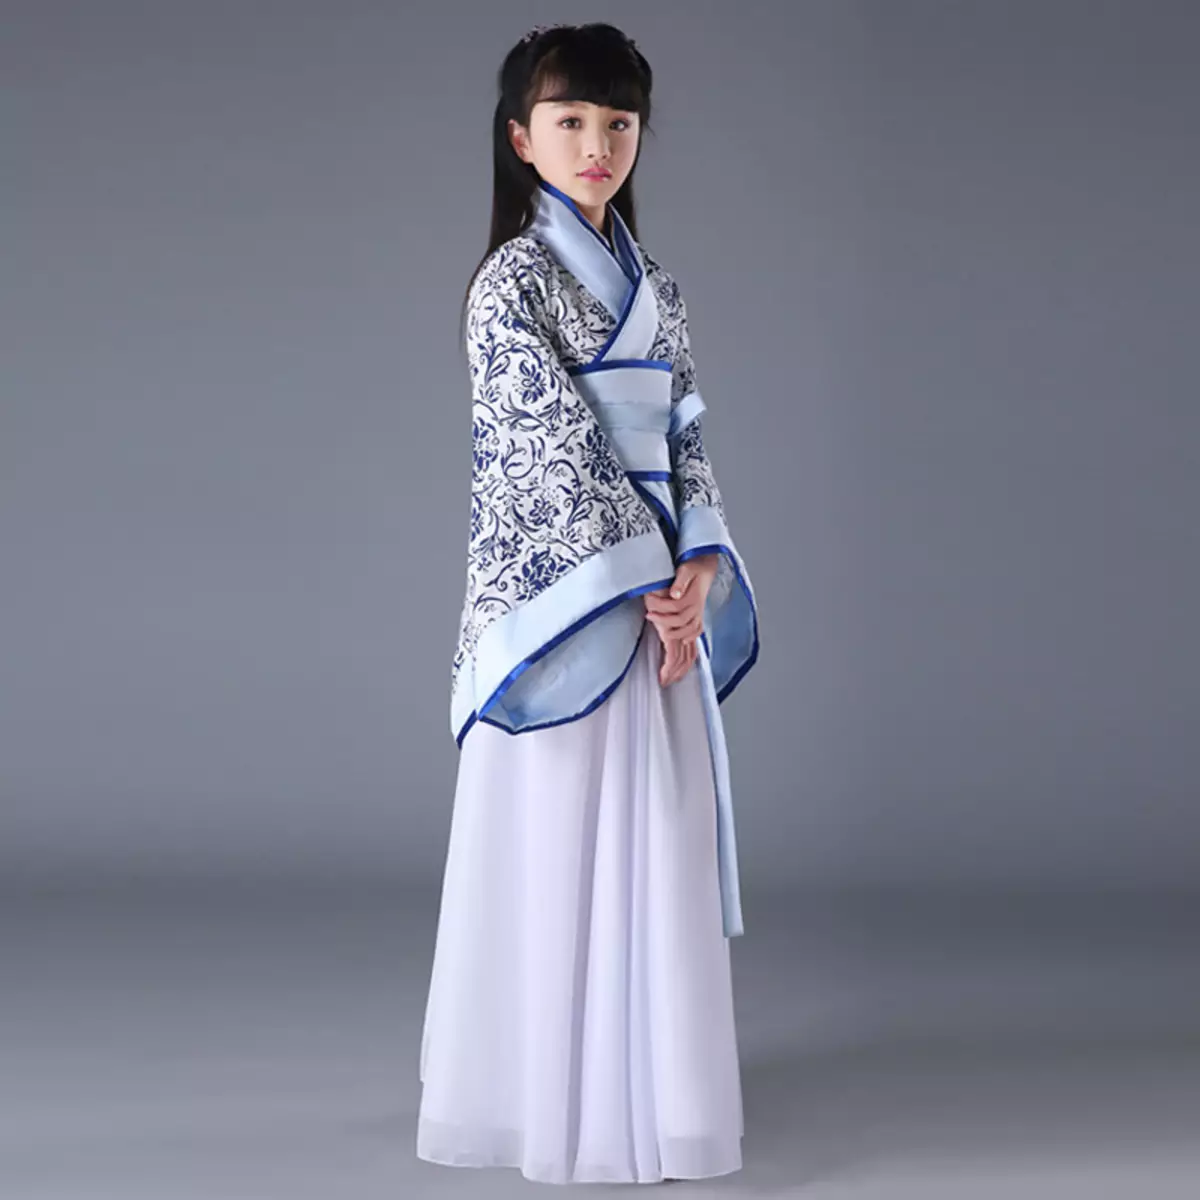 החליפה הלאומית הסינית (73 תמונות): תלבושת נקבה מסורתית של עמי סין, חליפה לילדה 1377_67